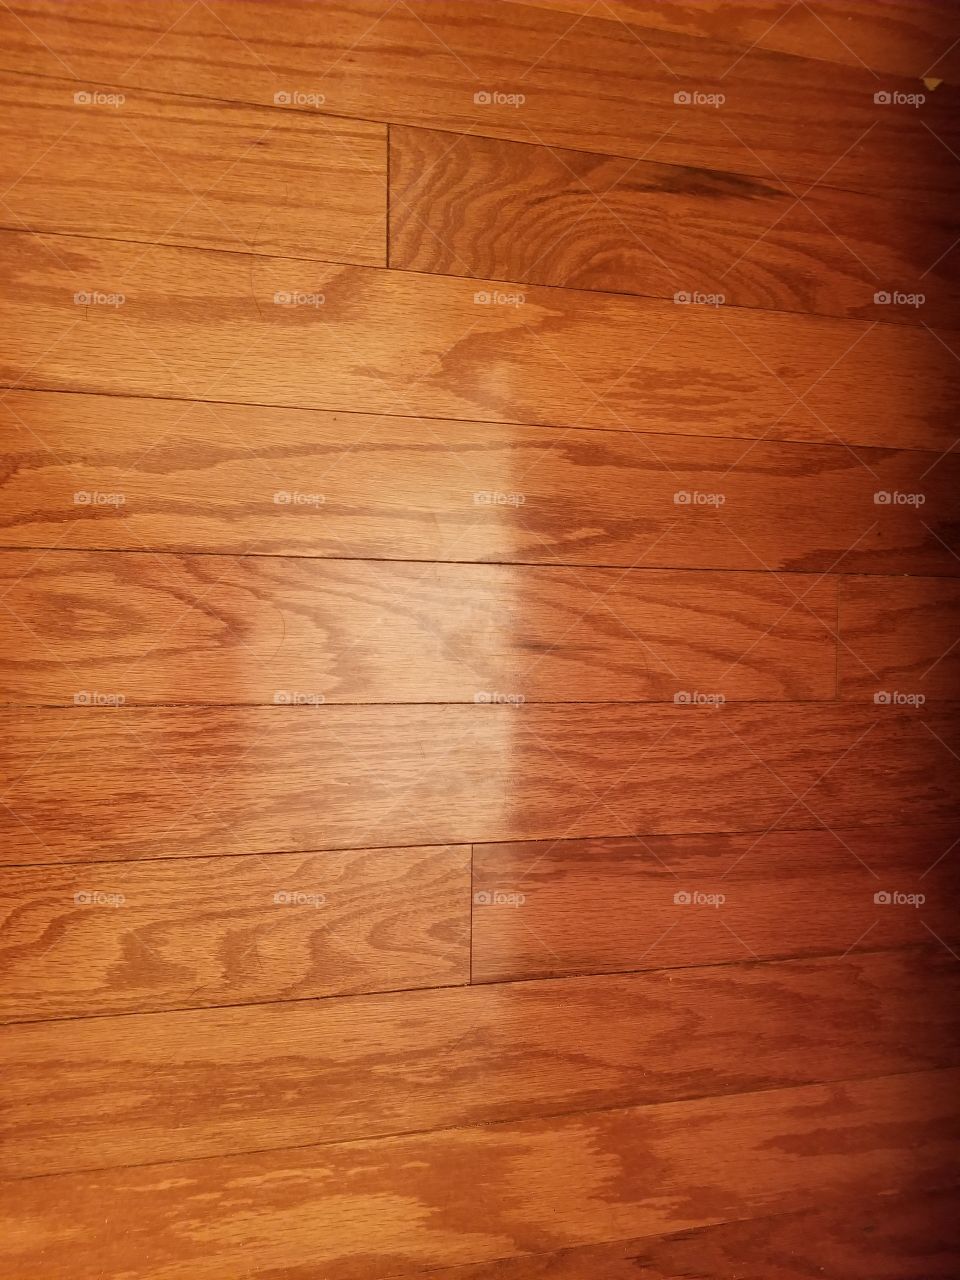 woodgrain floor laminate